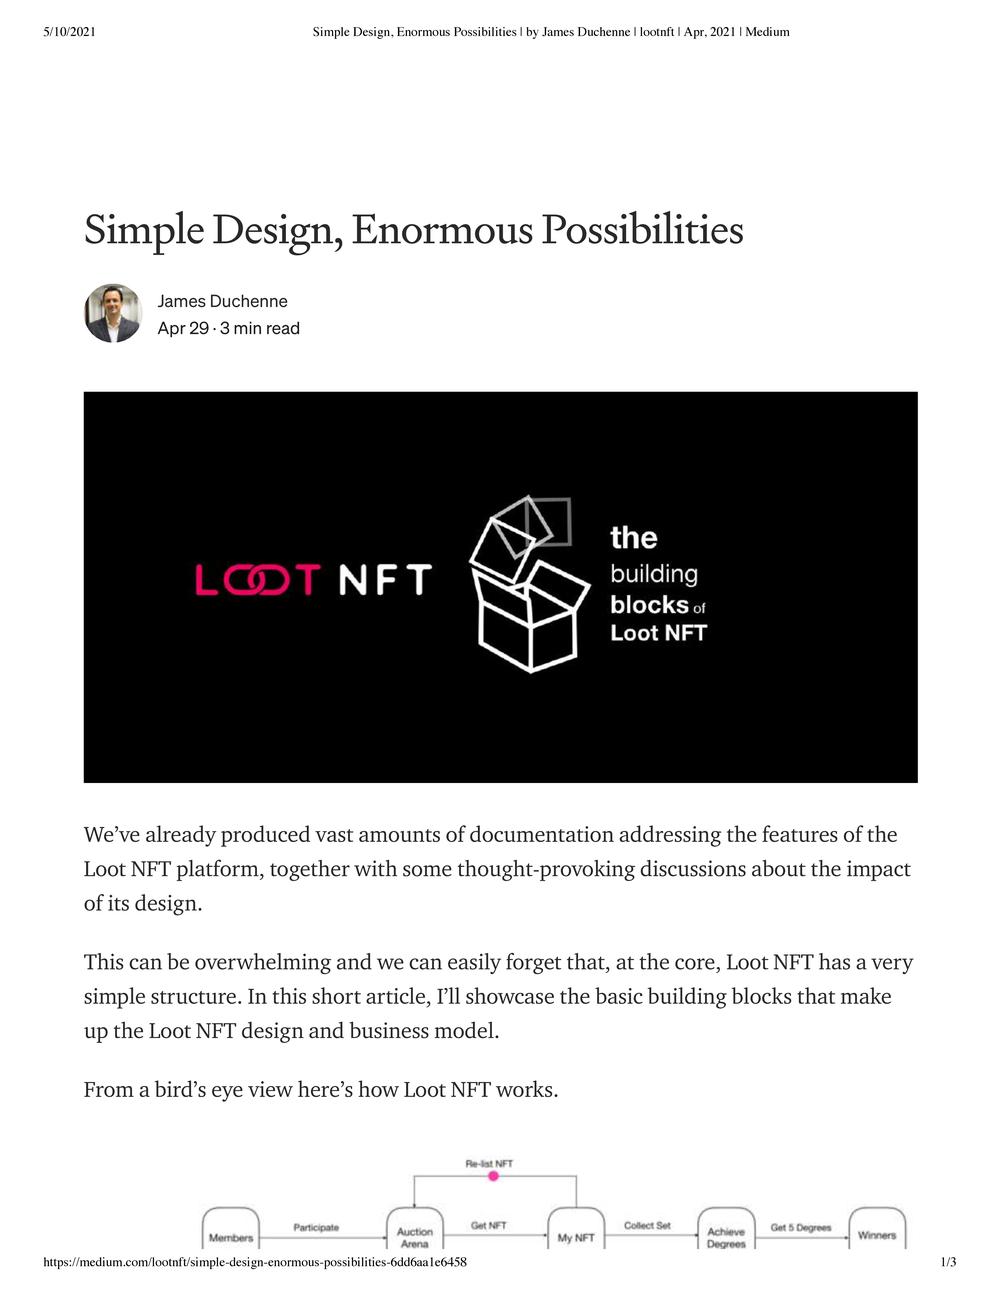 Loot NFT Pre-12 May Articles